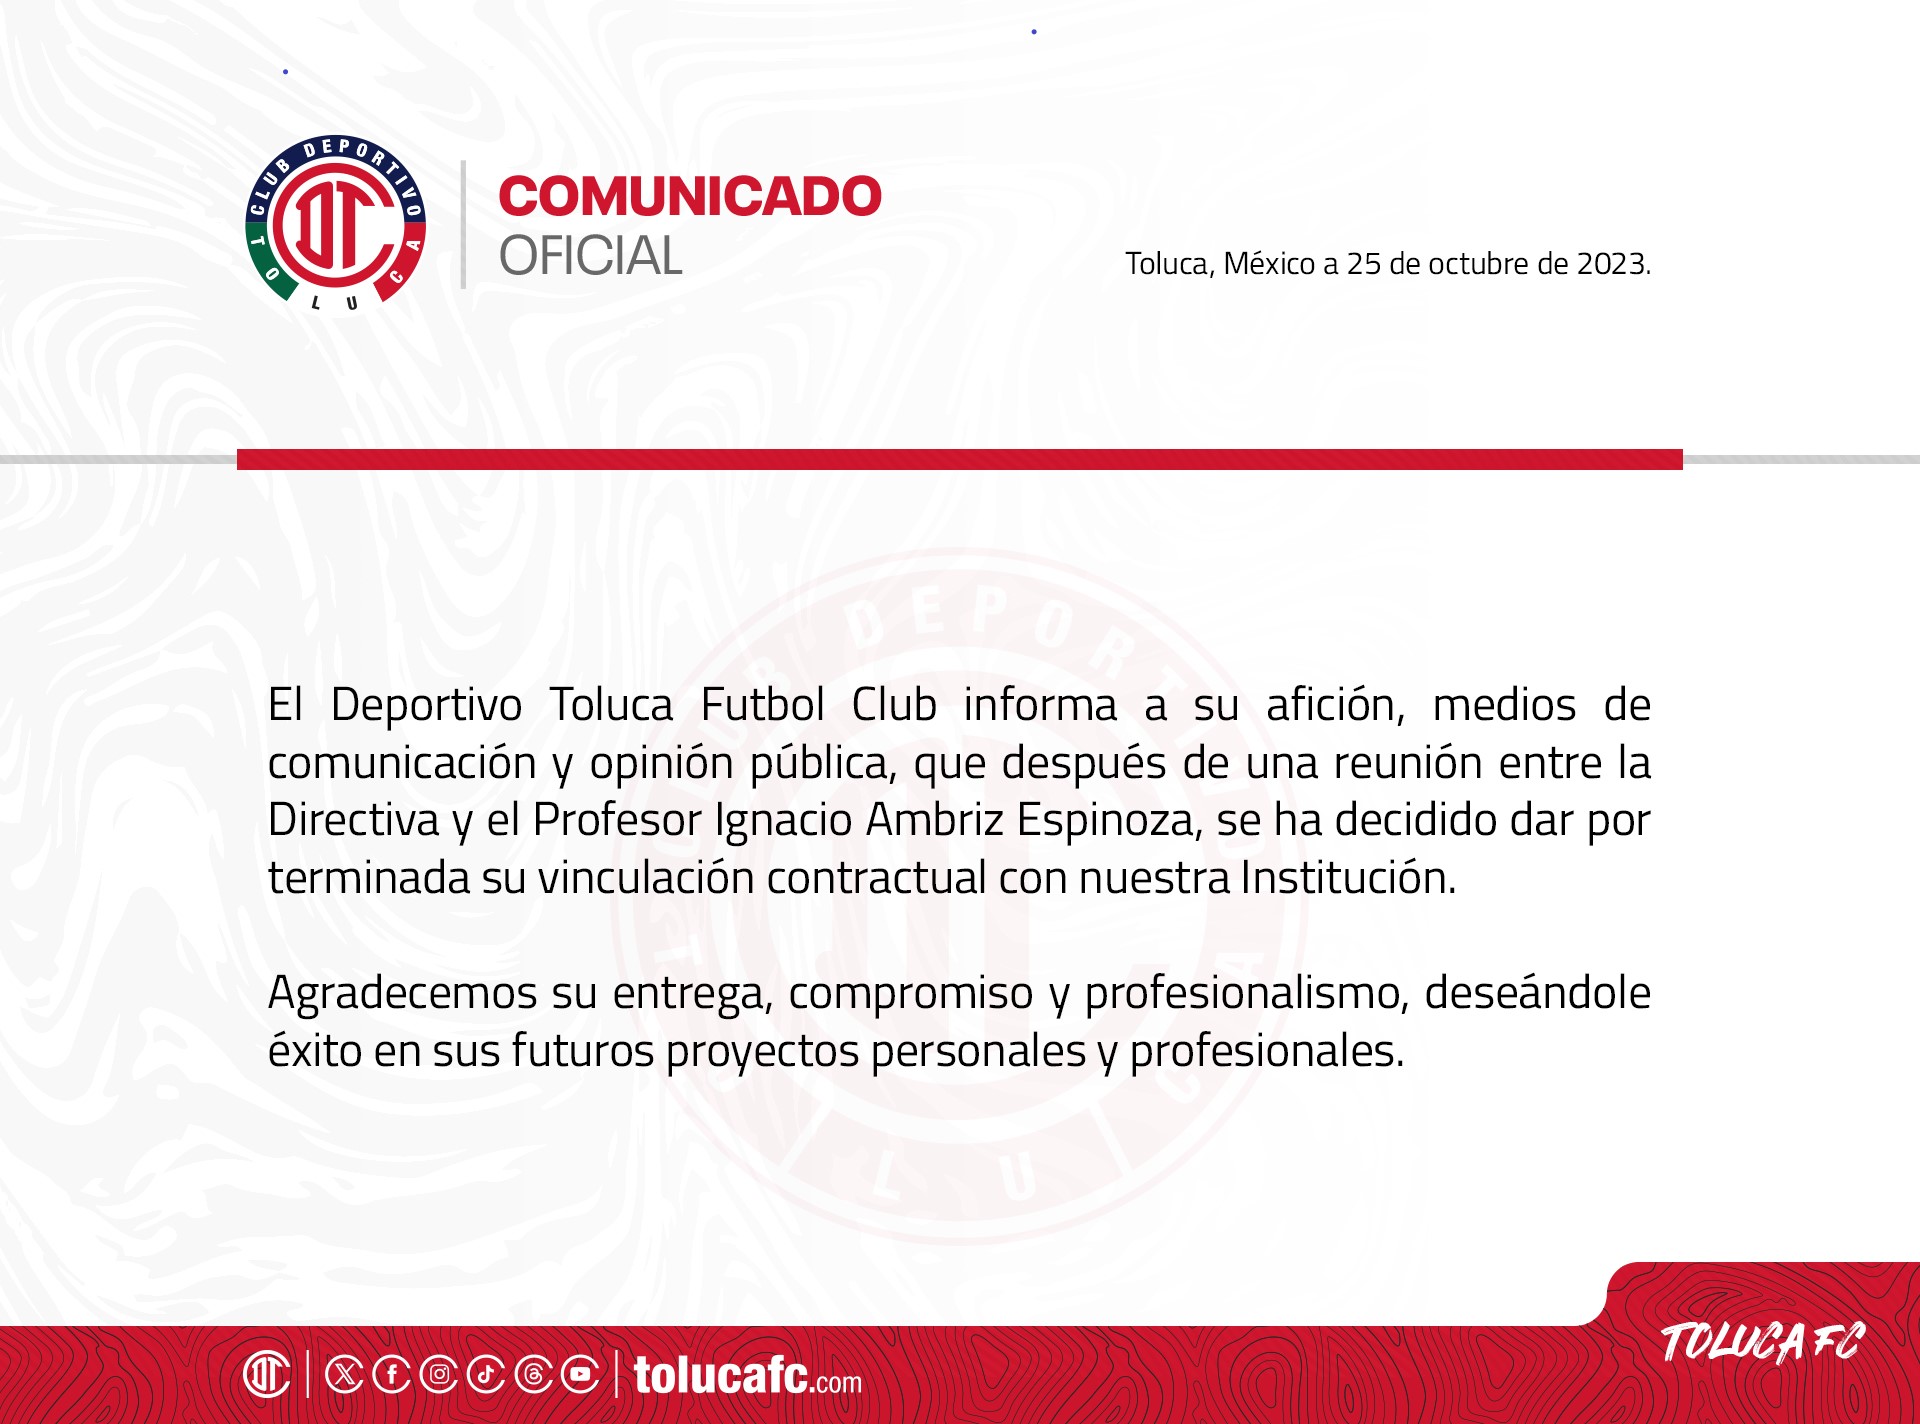 Club Toluca emote comunicado sobre despedida de Ignacio Ambriz